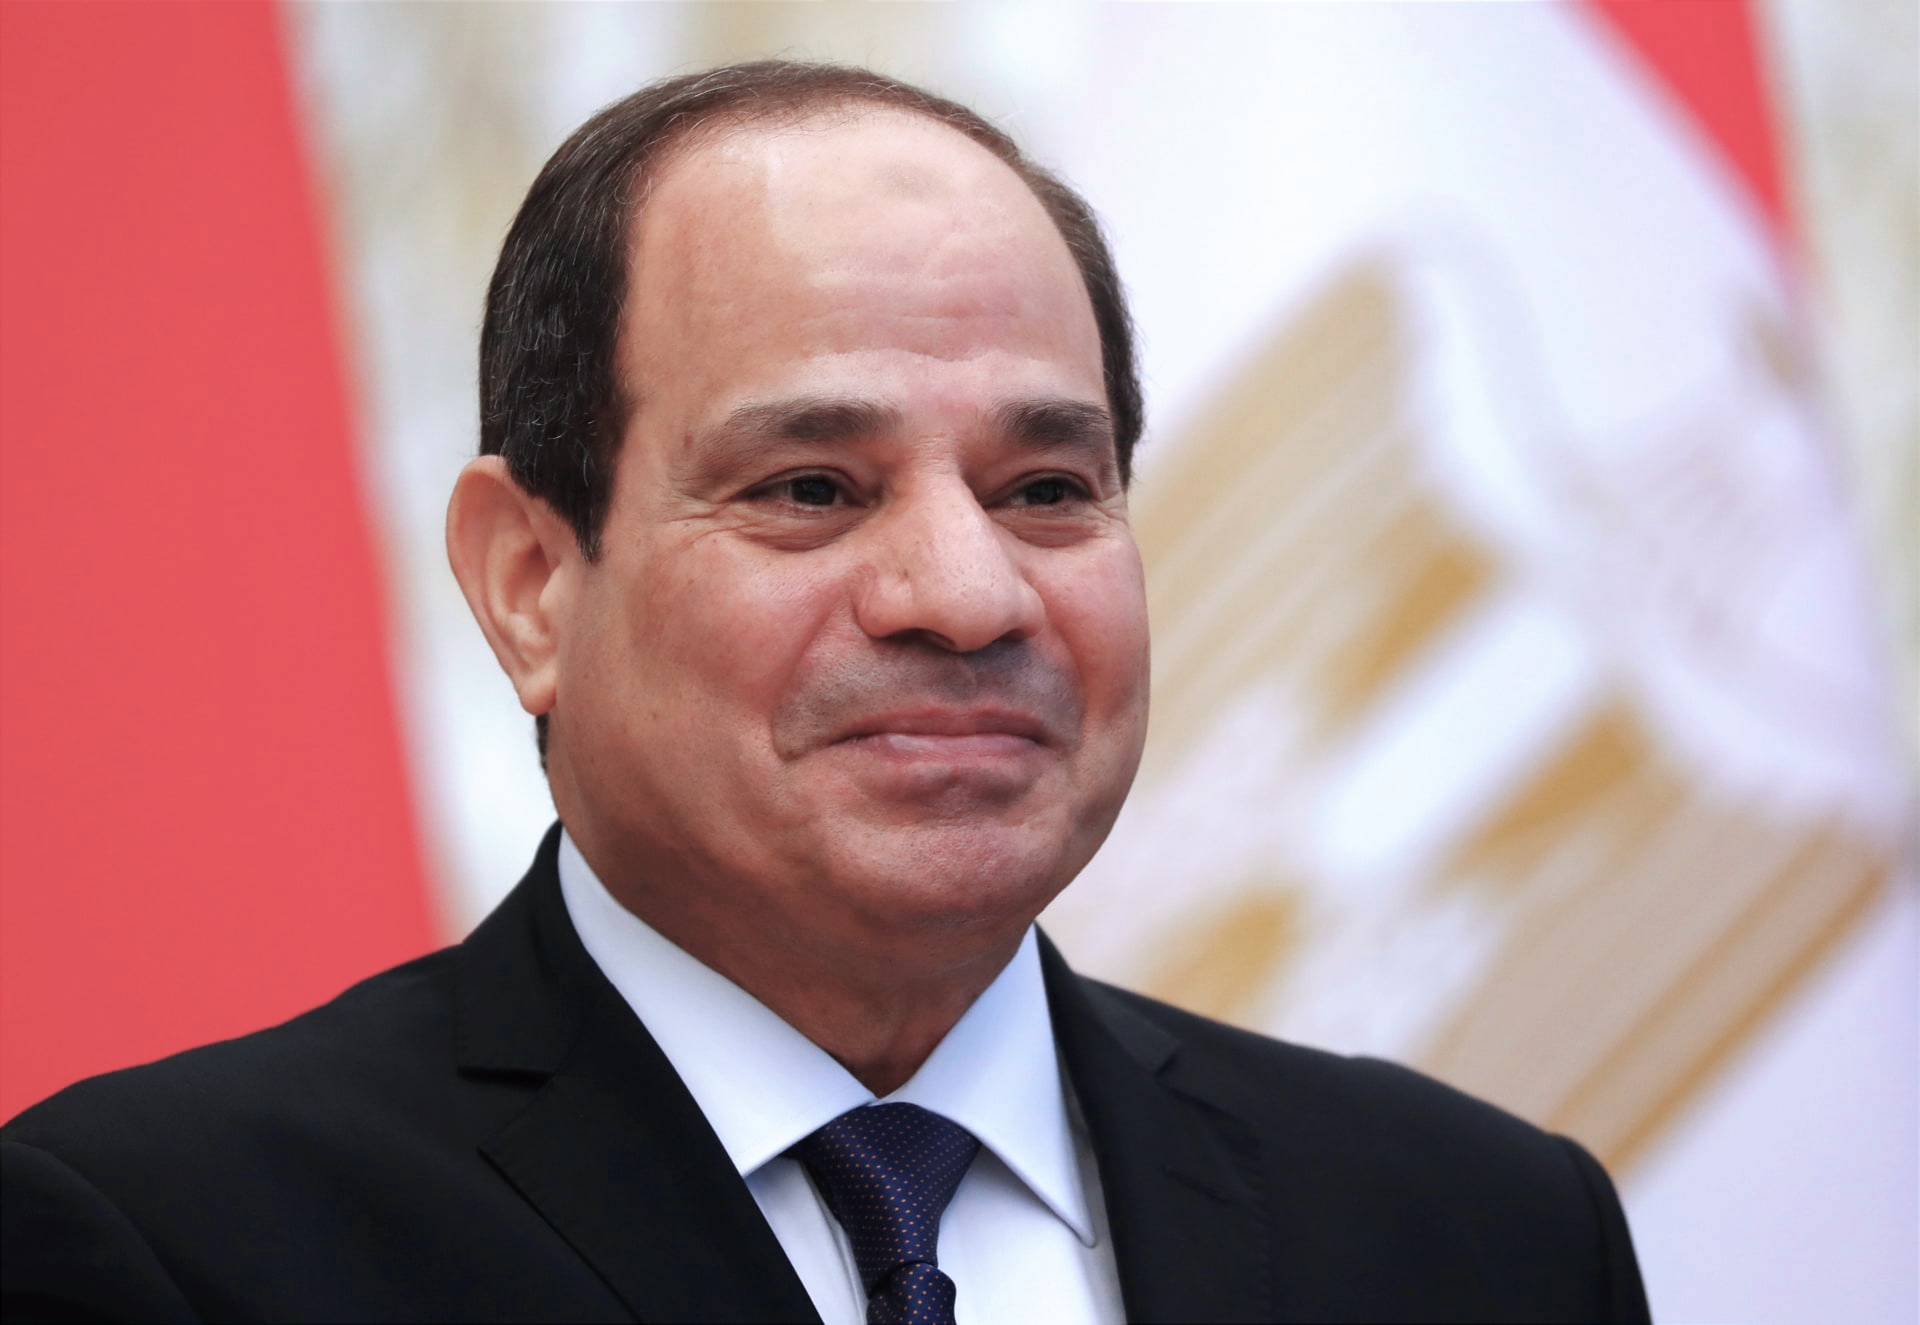 حزب التحرير المصري يهنئ الرئيس السيسي بالعام الجديد